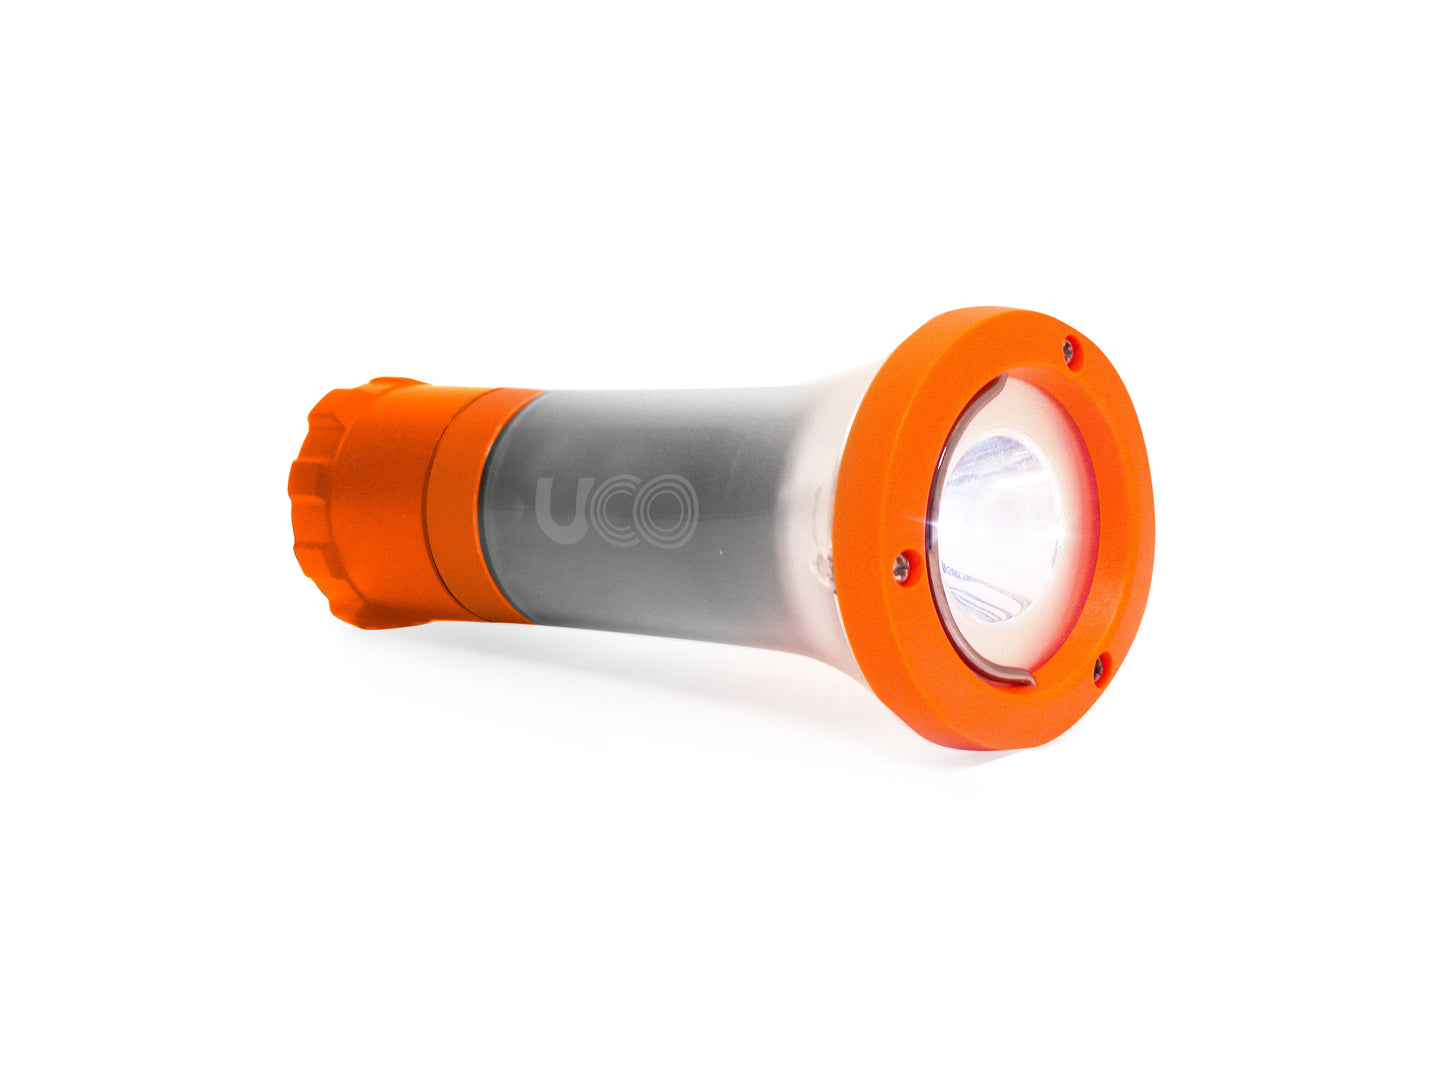 UCO Clarus 2 LED Lantern